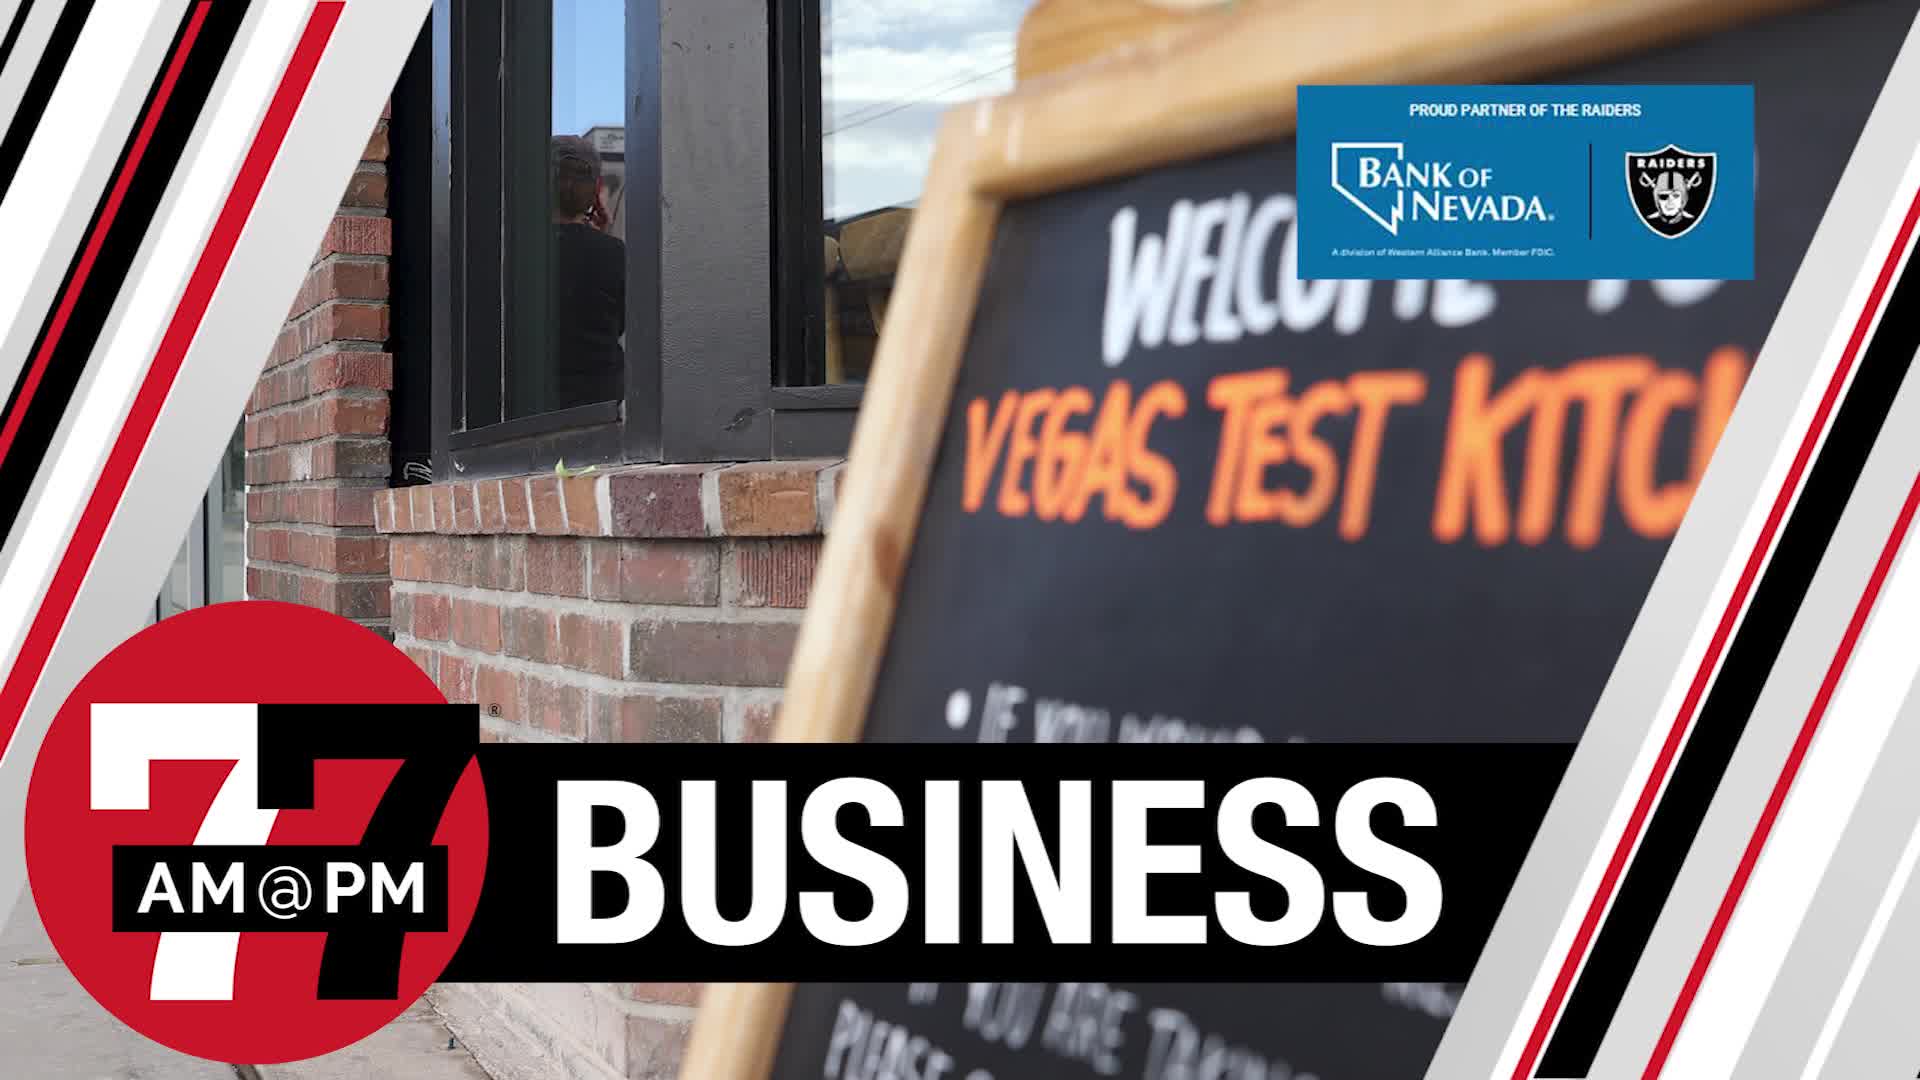 Vegas Test Kitchen to close